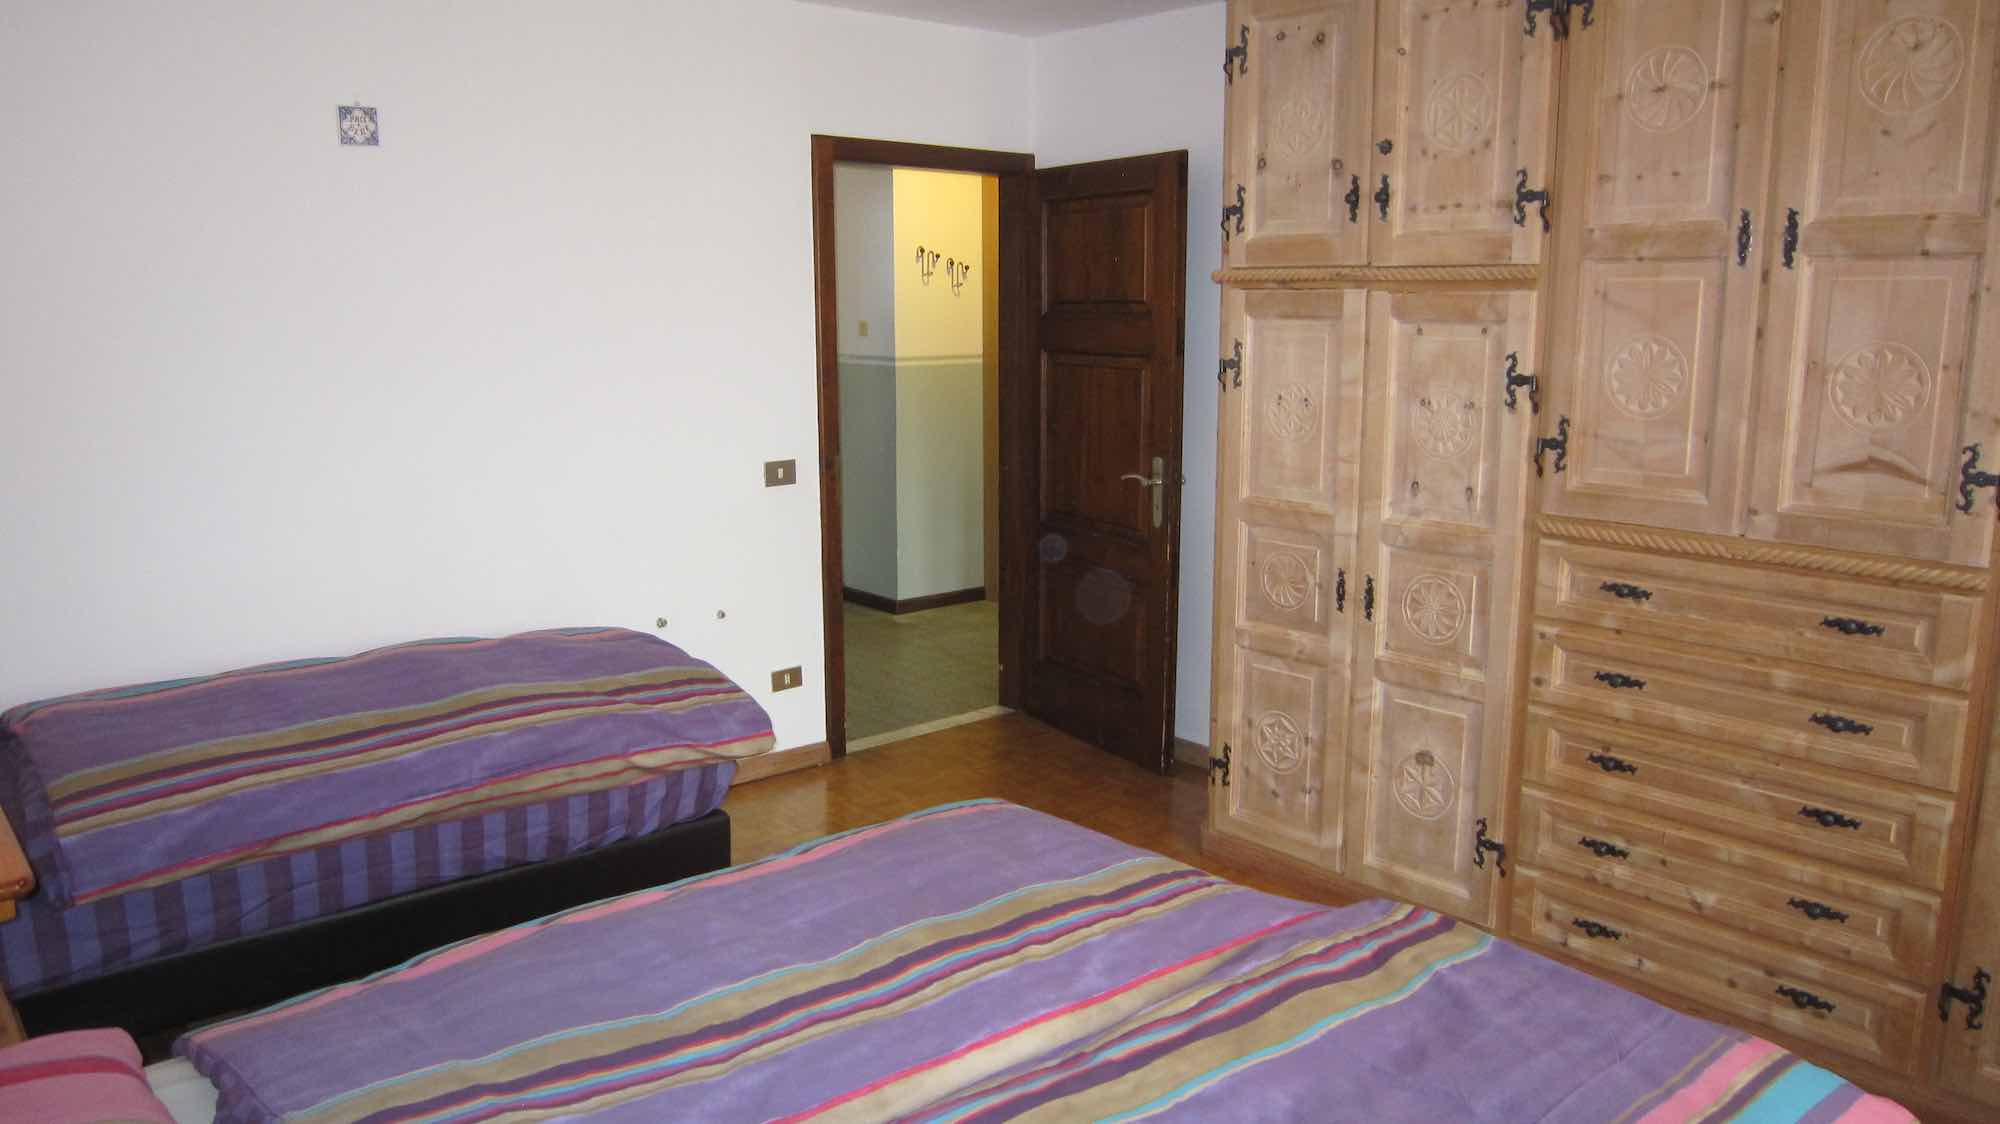 Appartamenti Galli Market - Via Saroch N.114, Livigno 23041 - Apartment - Appartamento Raununcoli 4